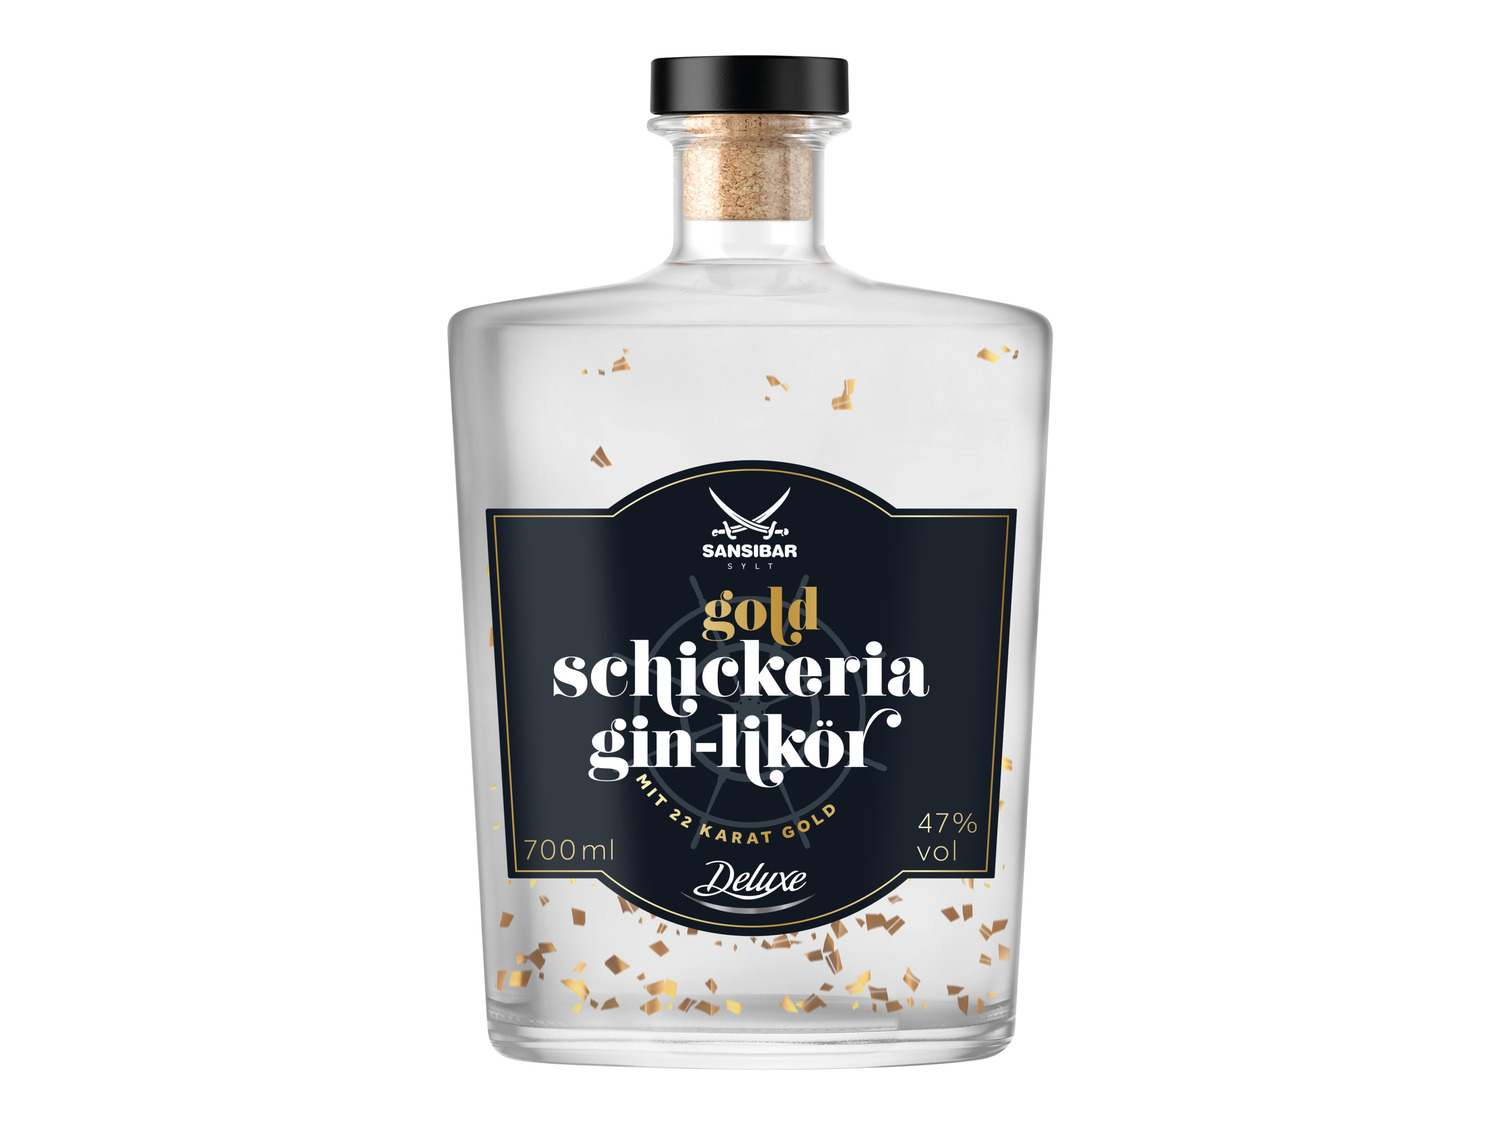 SANSIBAR Gin-Likör LIDL Schickeria | mit 47% Vol Gold